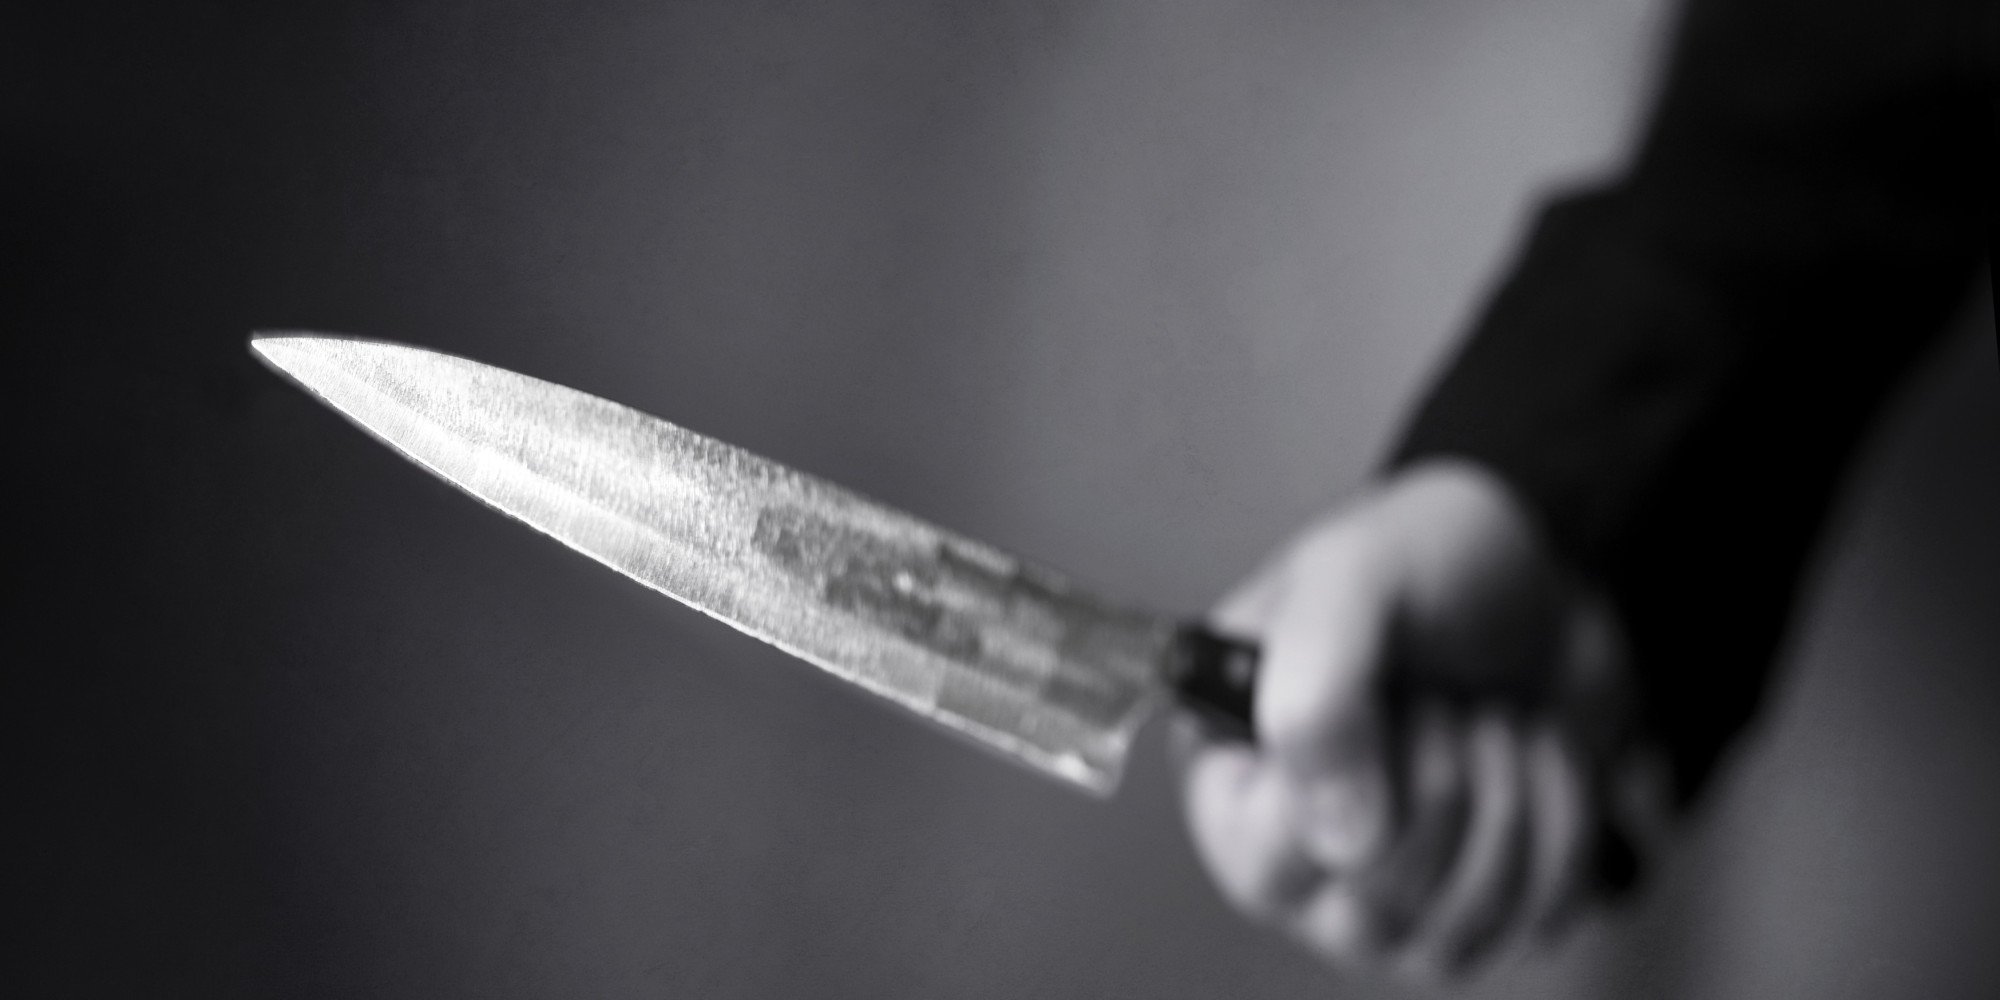 Τρόμος για 16χρονο στα Κάτω Πατήσια – Άγνωστοι τον μαχαίρωσαν για να τον ληστέψουν